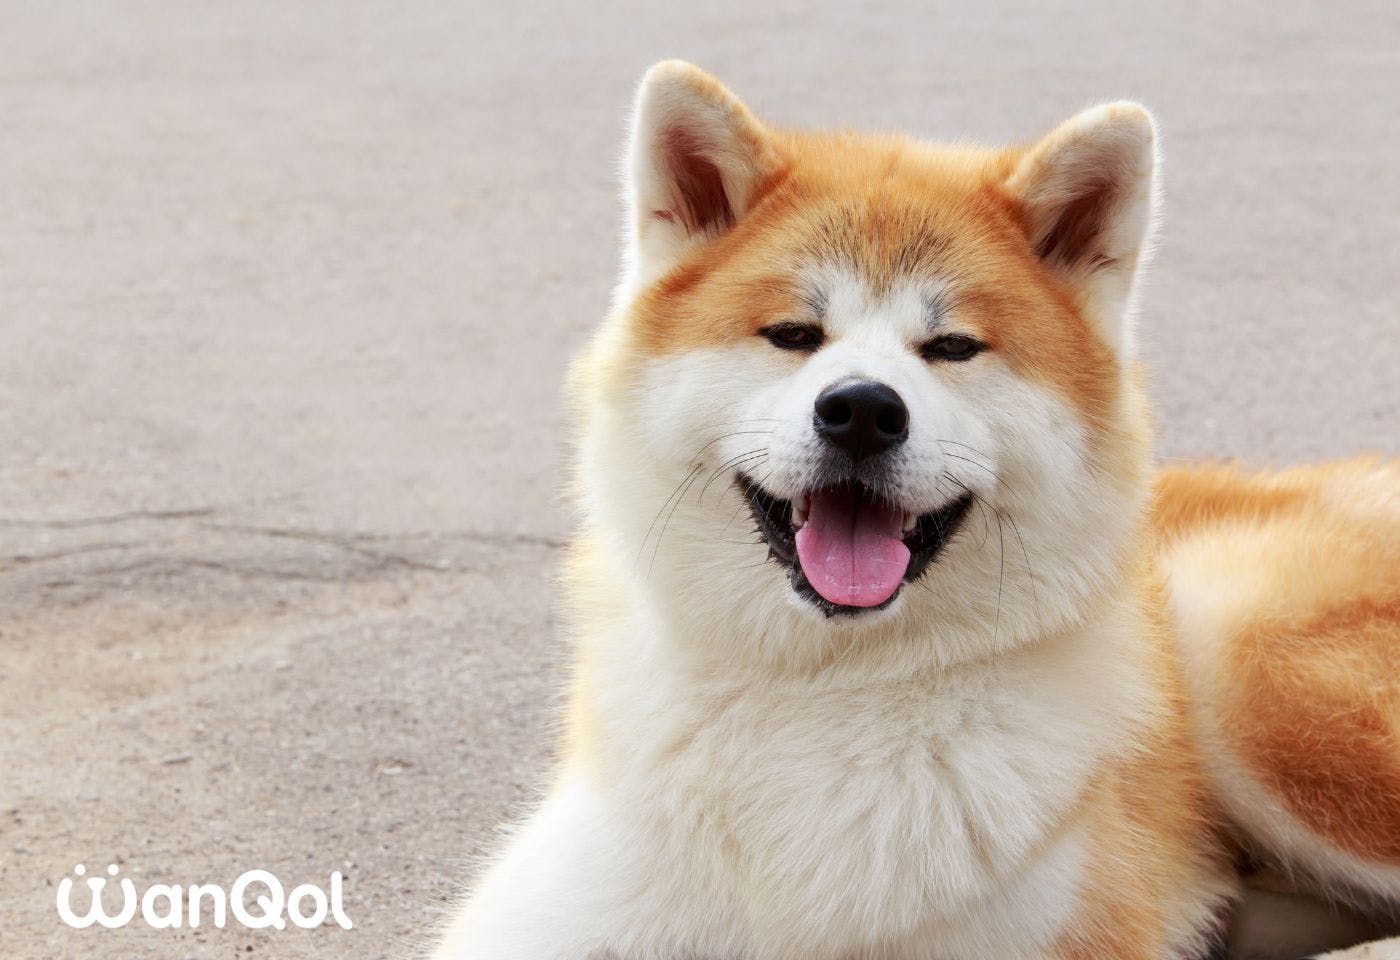 秋田犬は「あきたいぬ」と読む日本犬の種類で、天然記念物に指定されています。